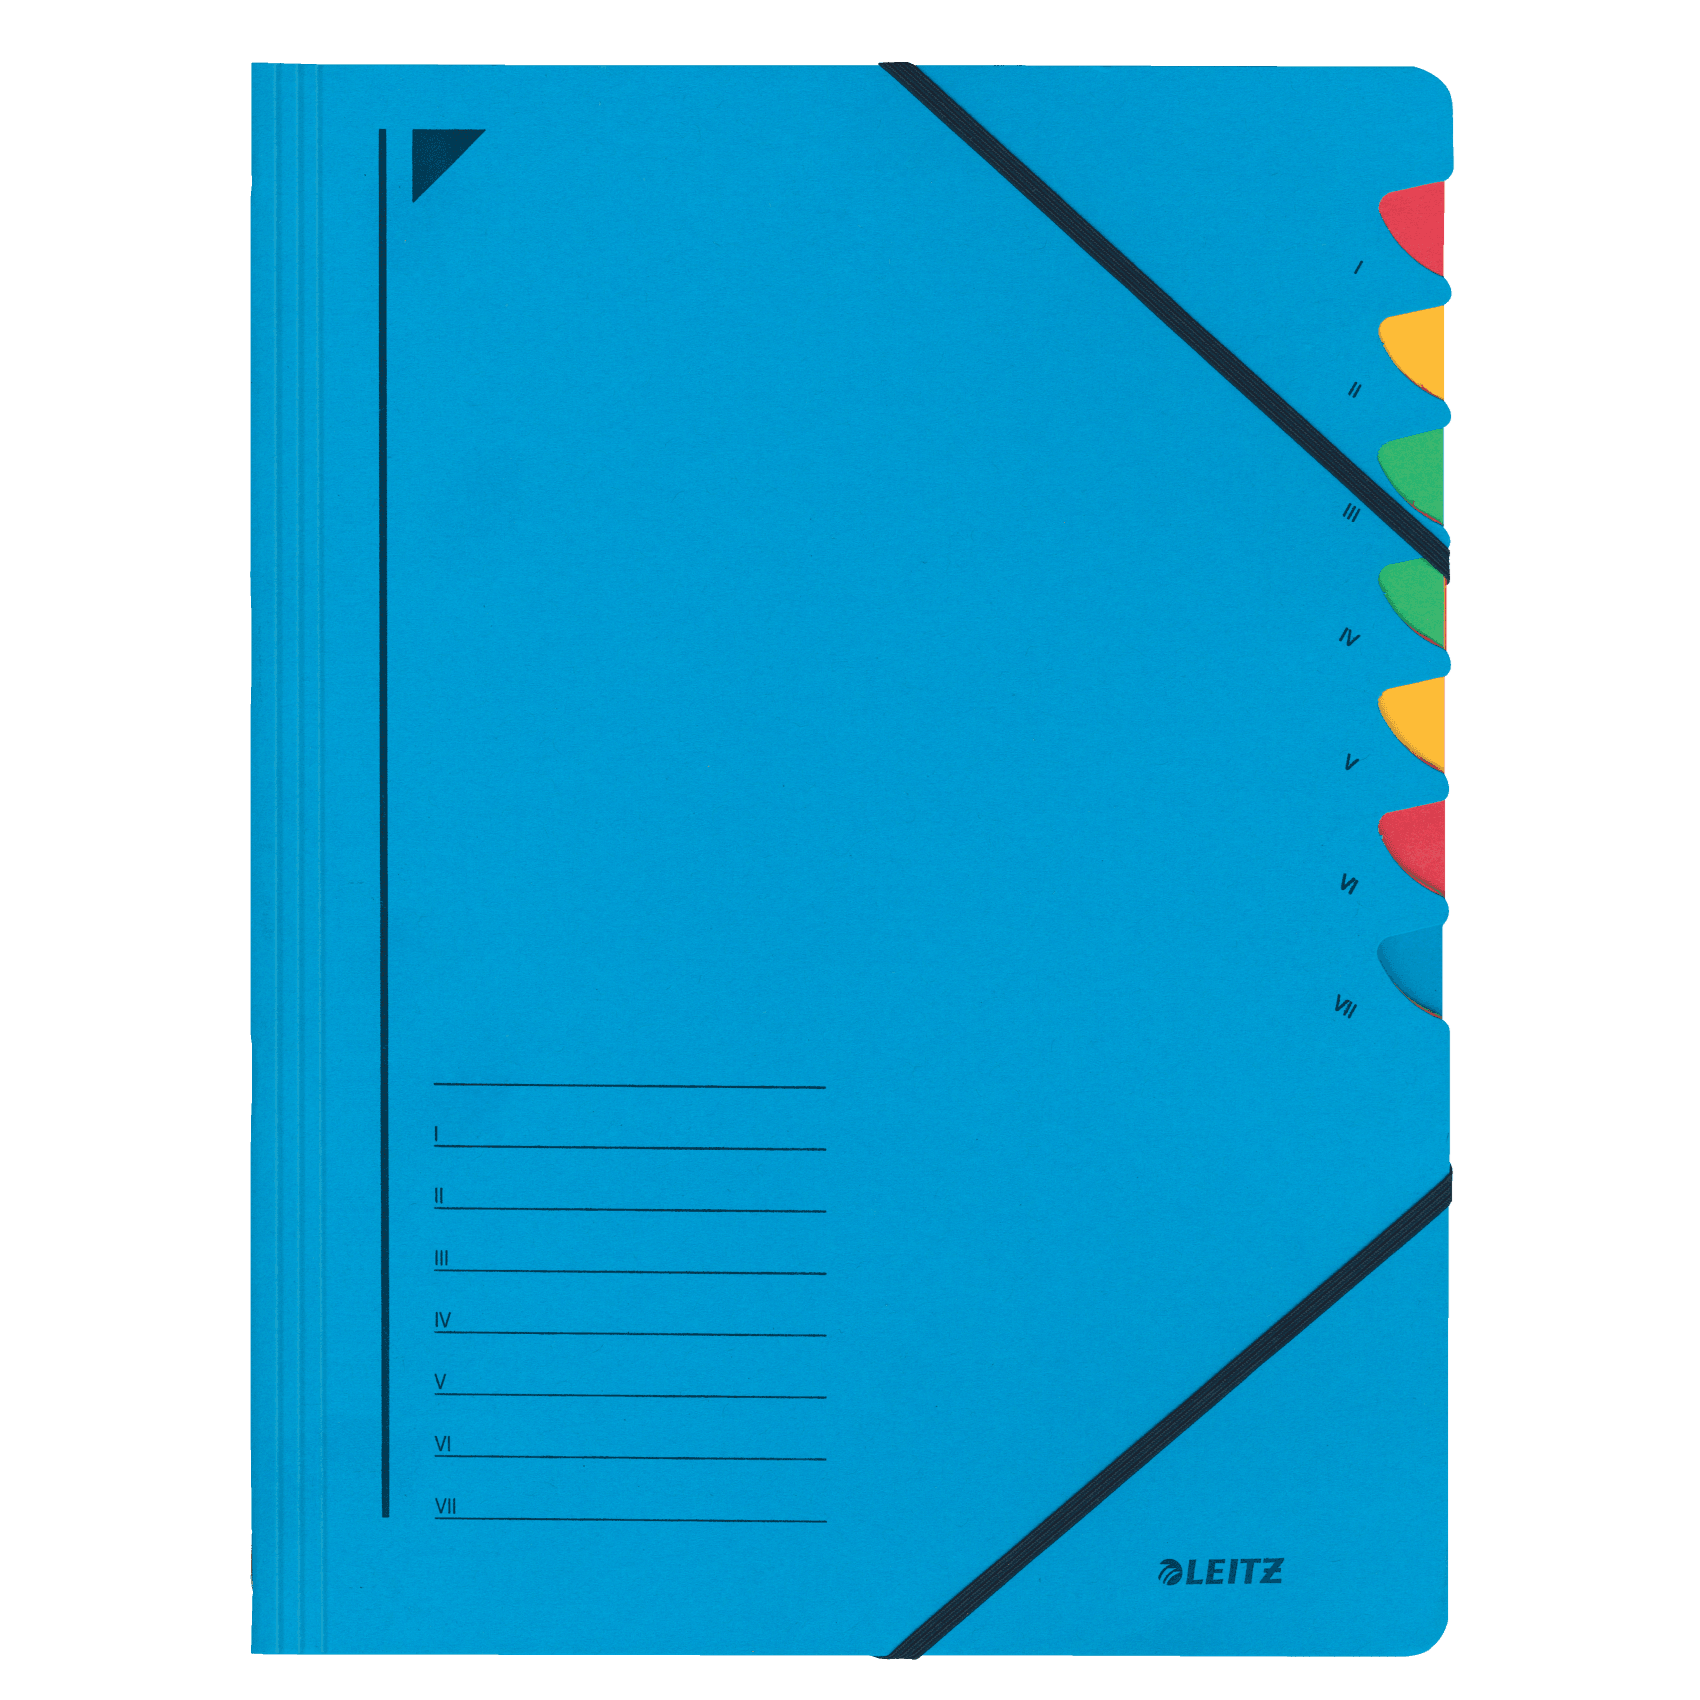 Třídící desky Leitz s gumičkou, 7 přihrádkové, modré